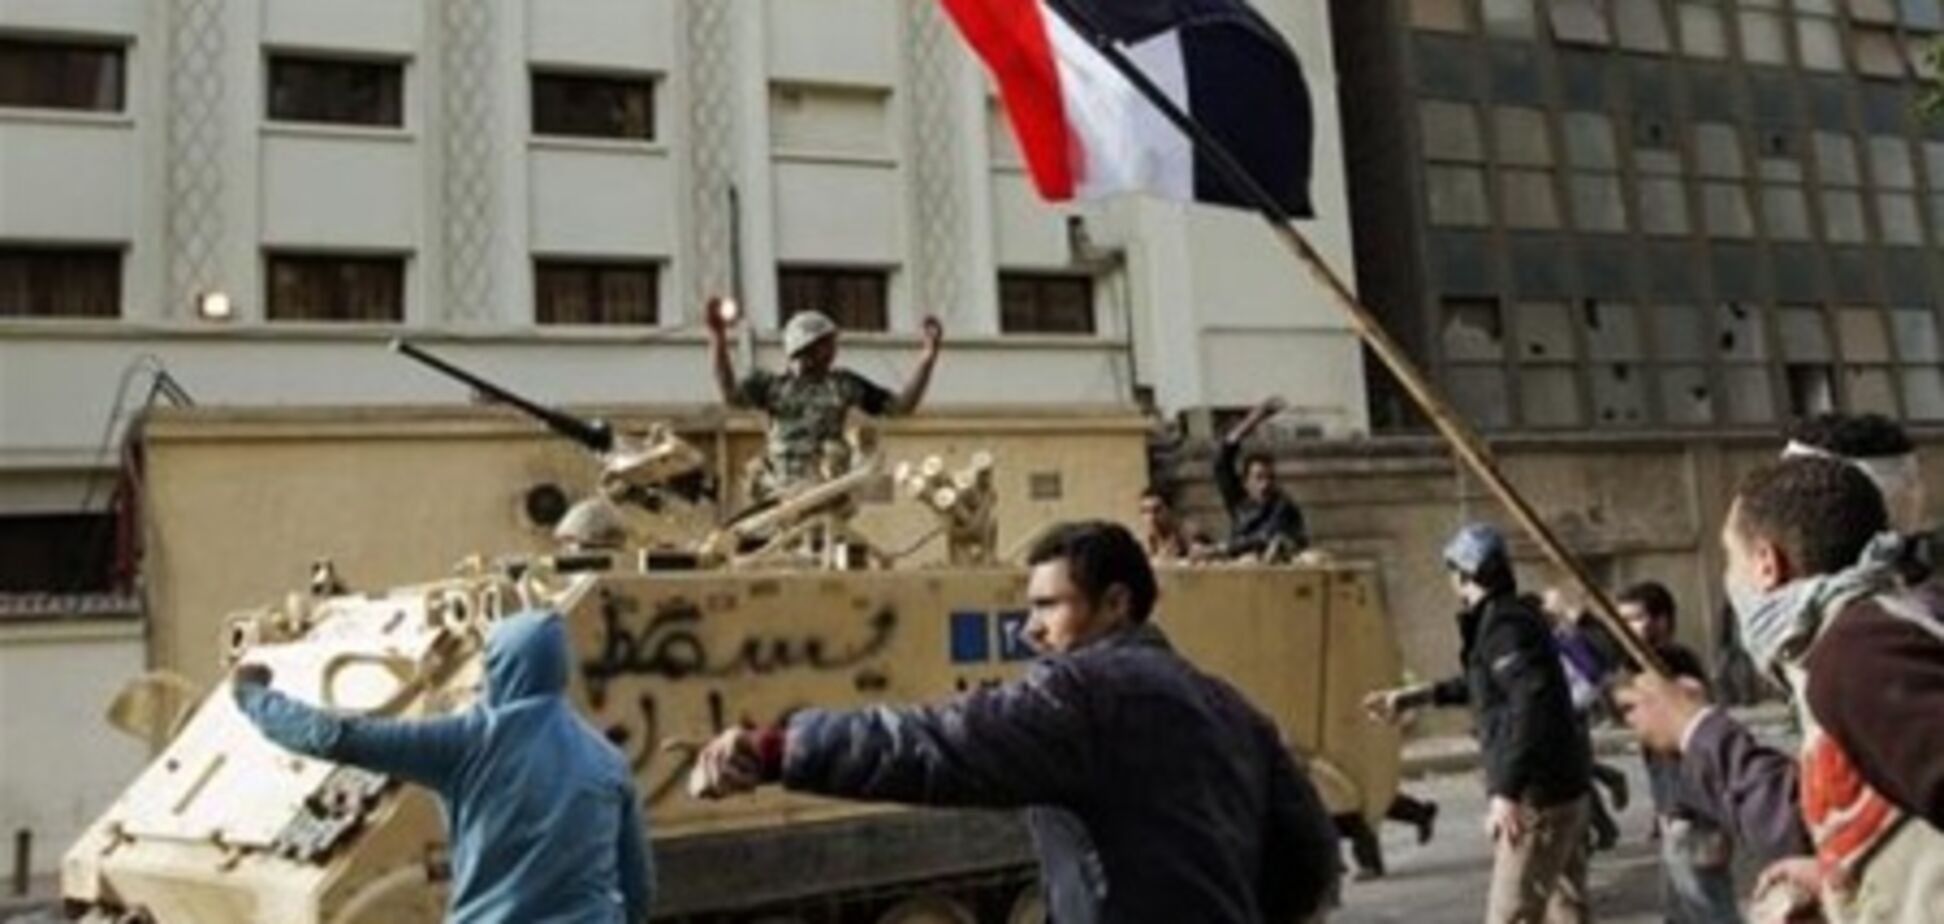 Жители Каира готовятся к новой революции